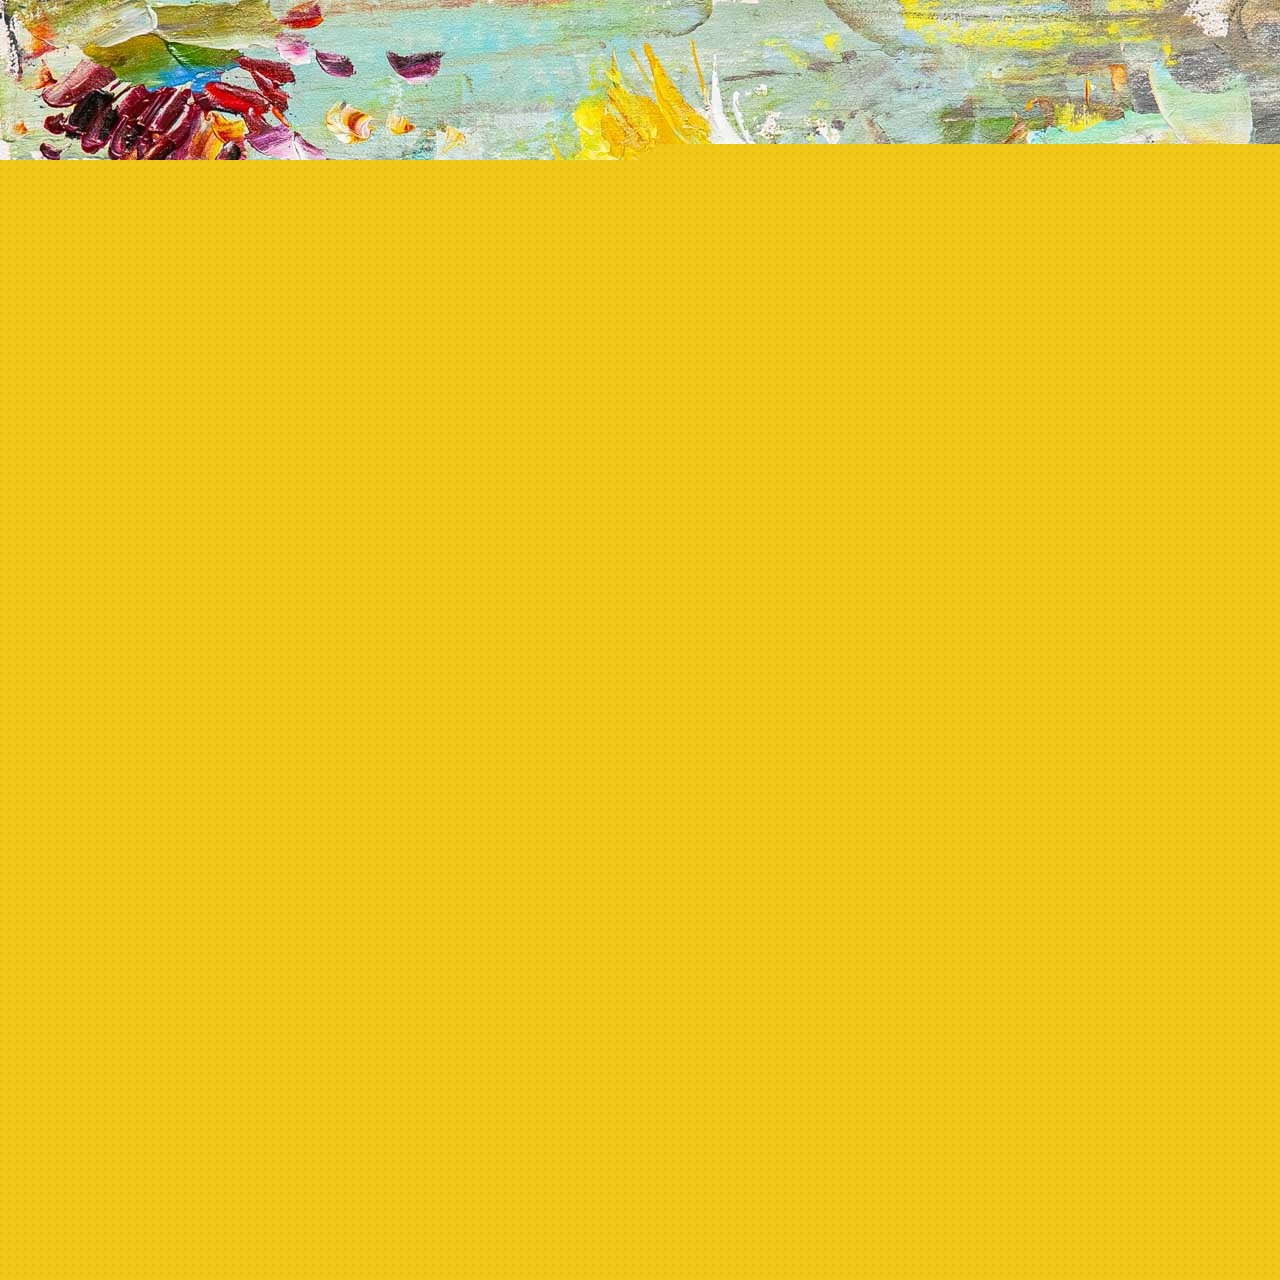 картина масло холст Картина маслом "Длиннохвостый шёлковый свиристель", Родригес Хосе, LegacyArt Артворлд.ру